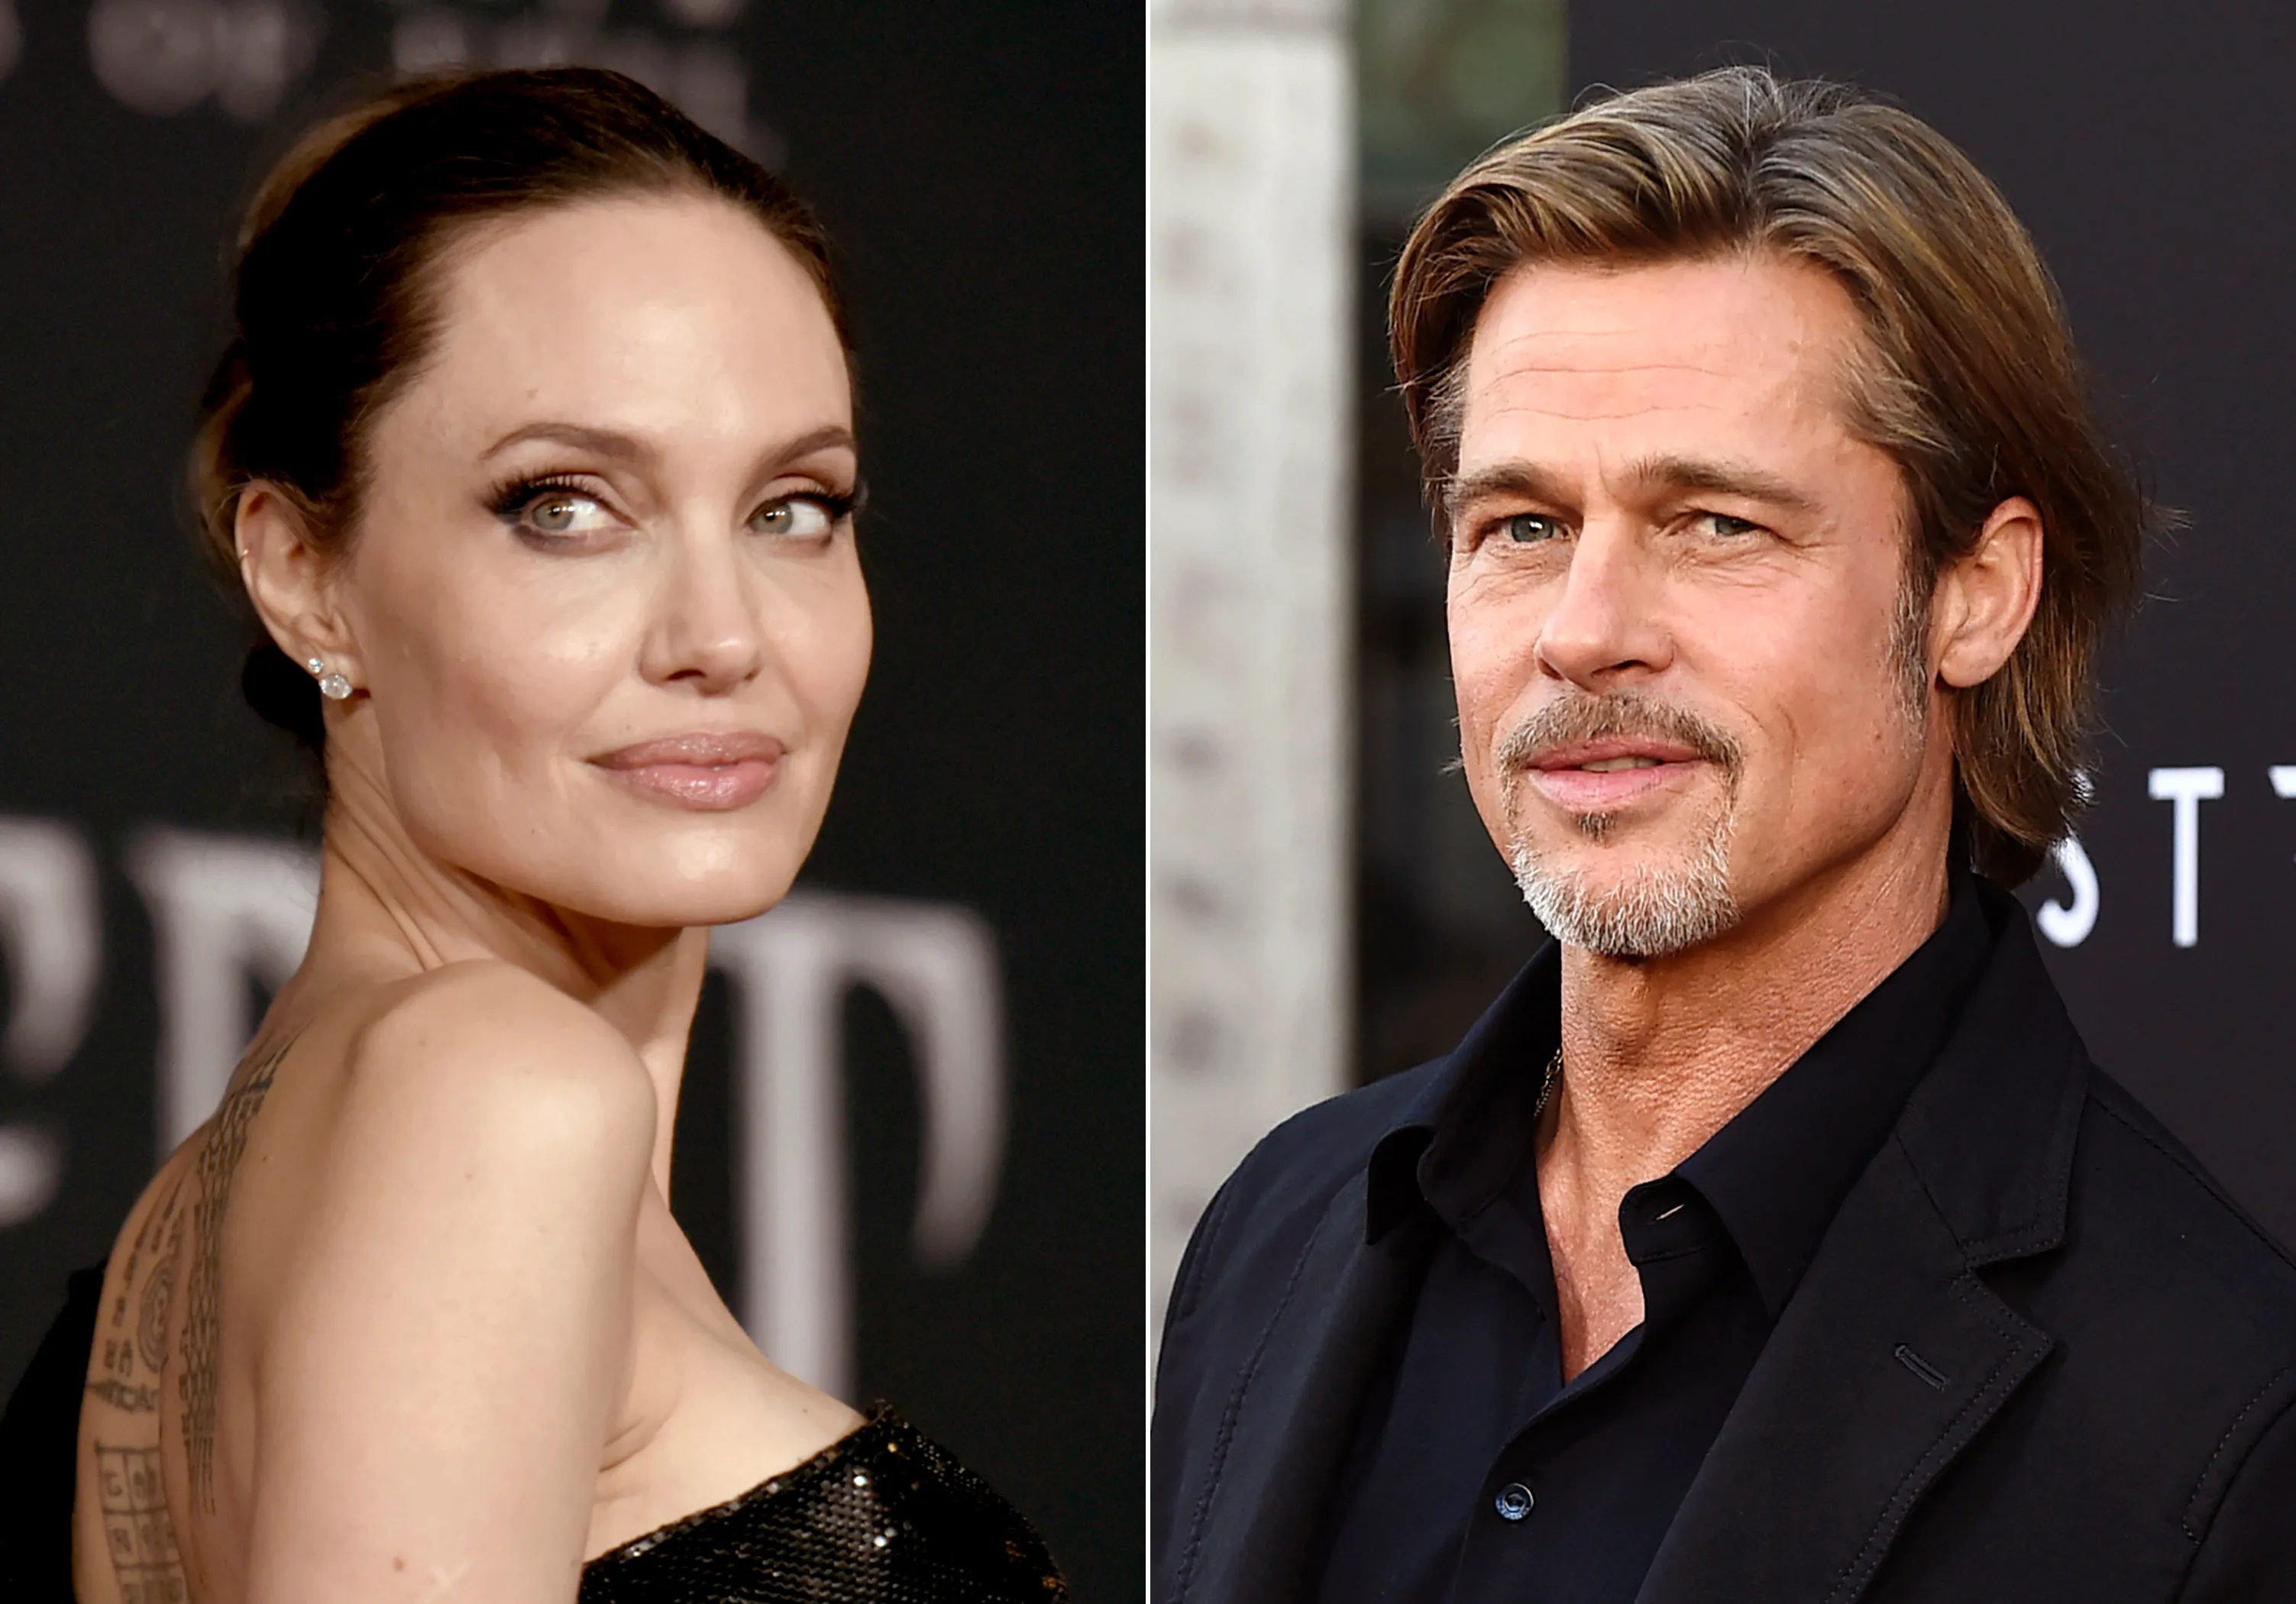 Fiton Jolie! Brad Pitt heq dorë nga kujdestaria e përbashkët e fëmijëve